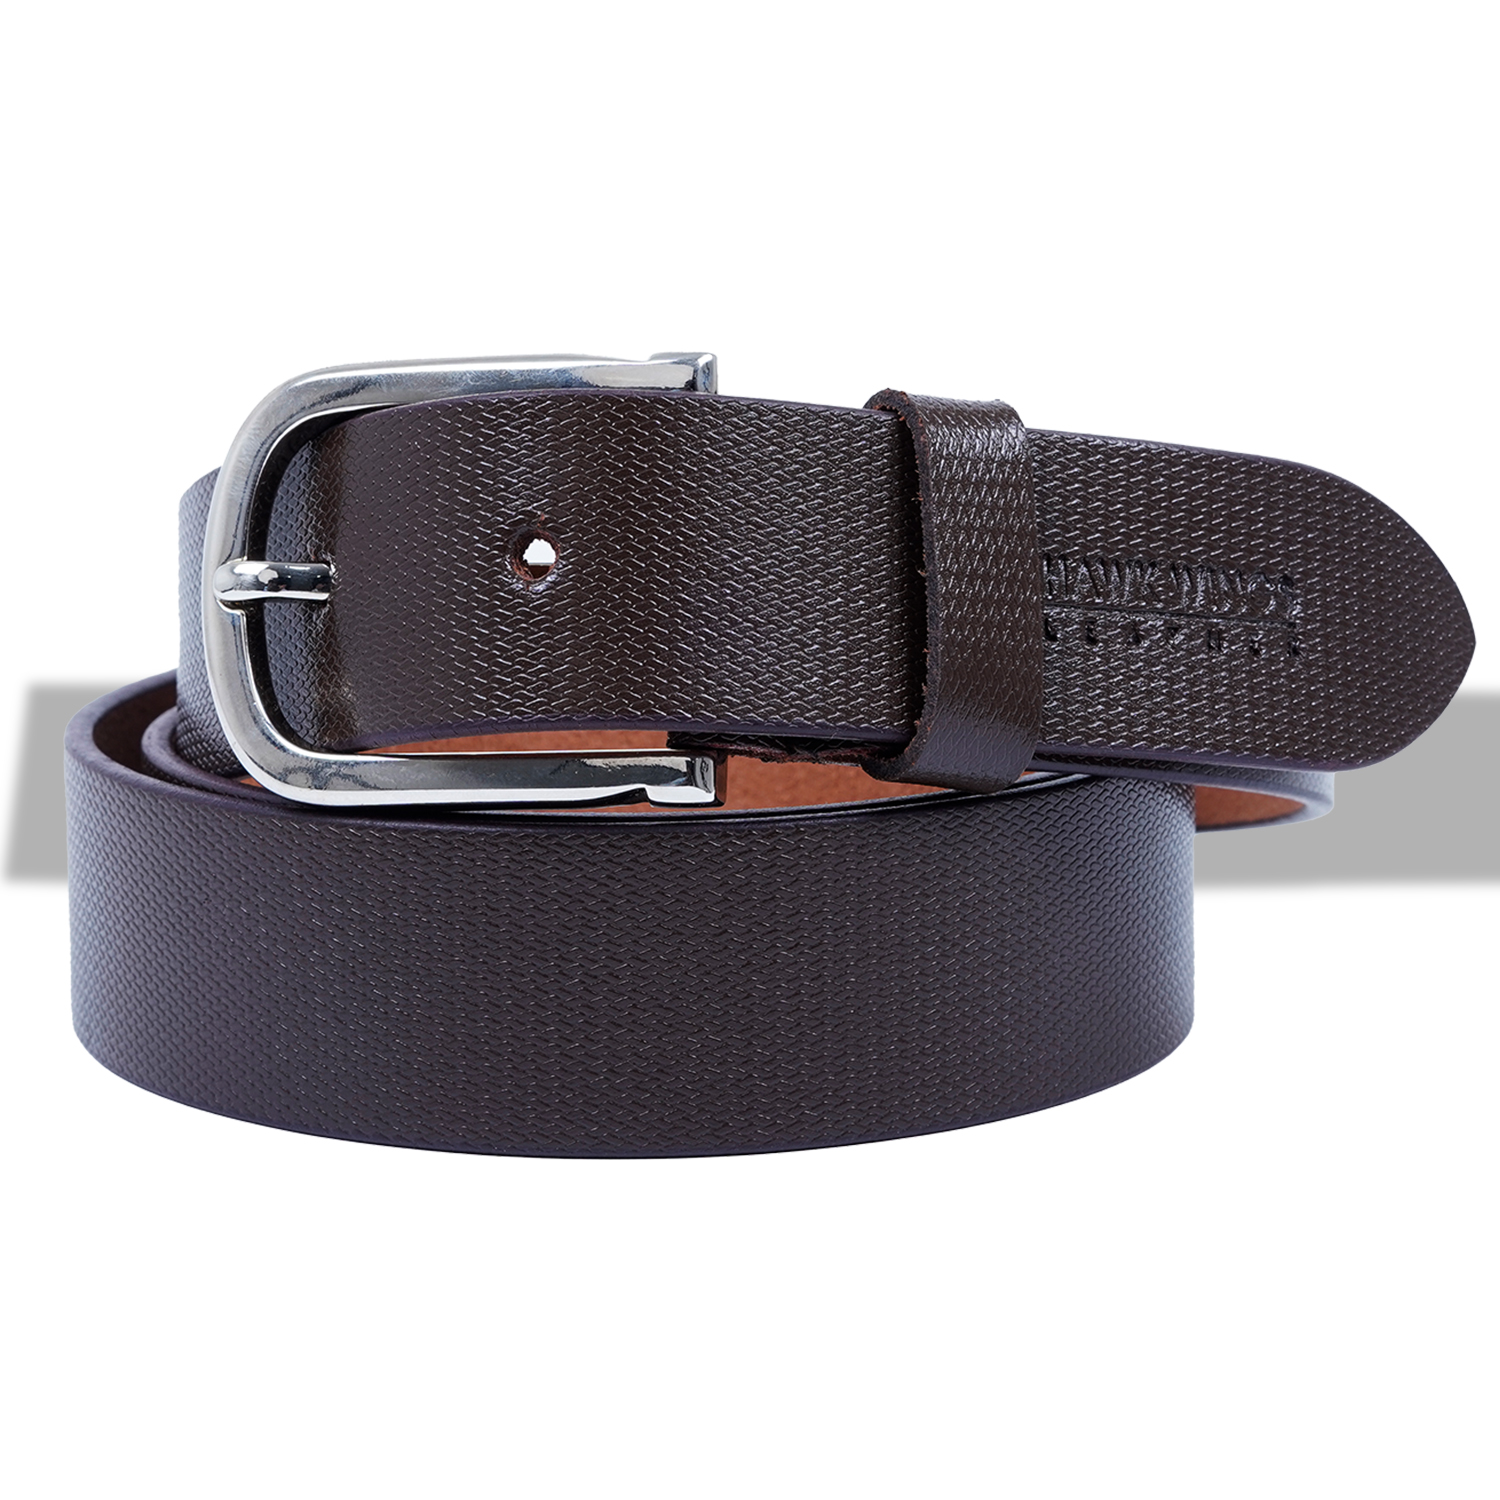  Genuine Leather Belt for Men |Brown| Formal Belt-asset-275